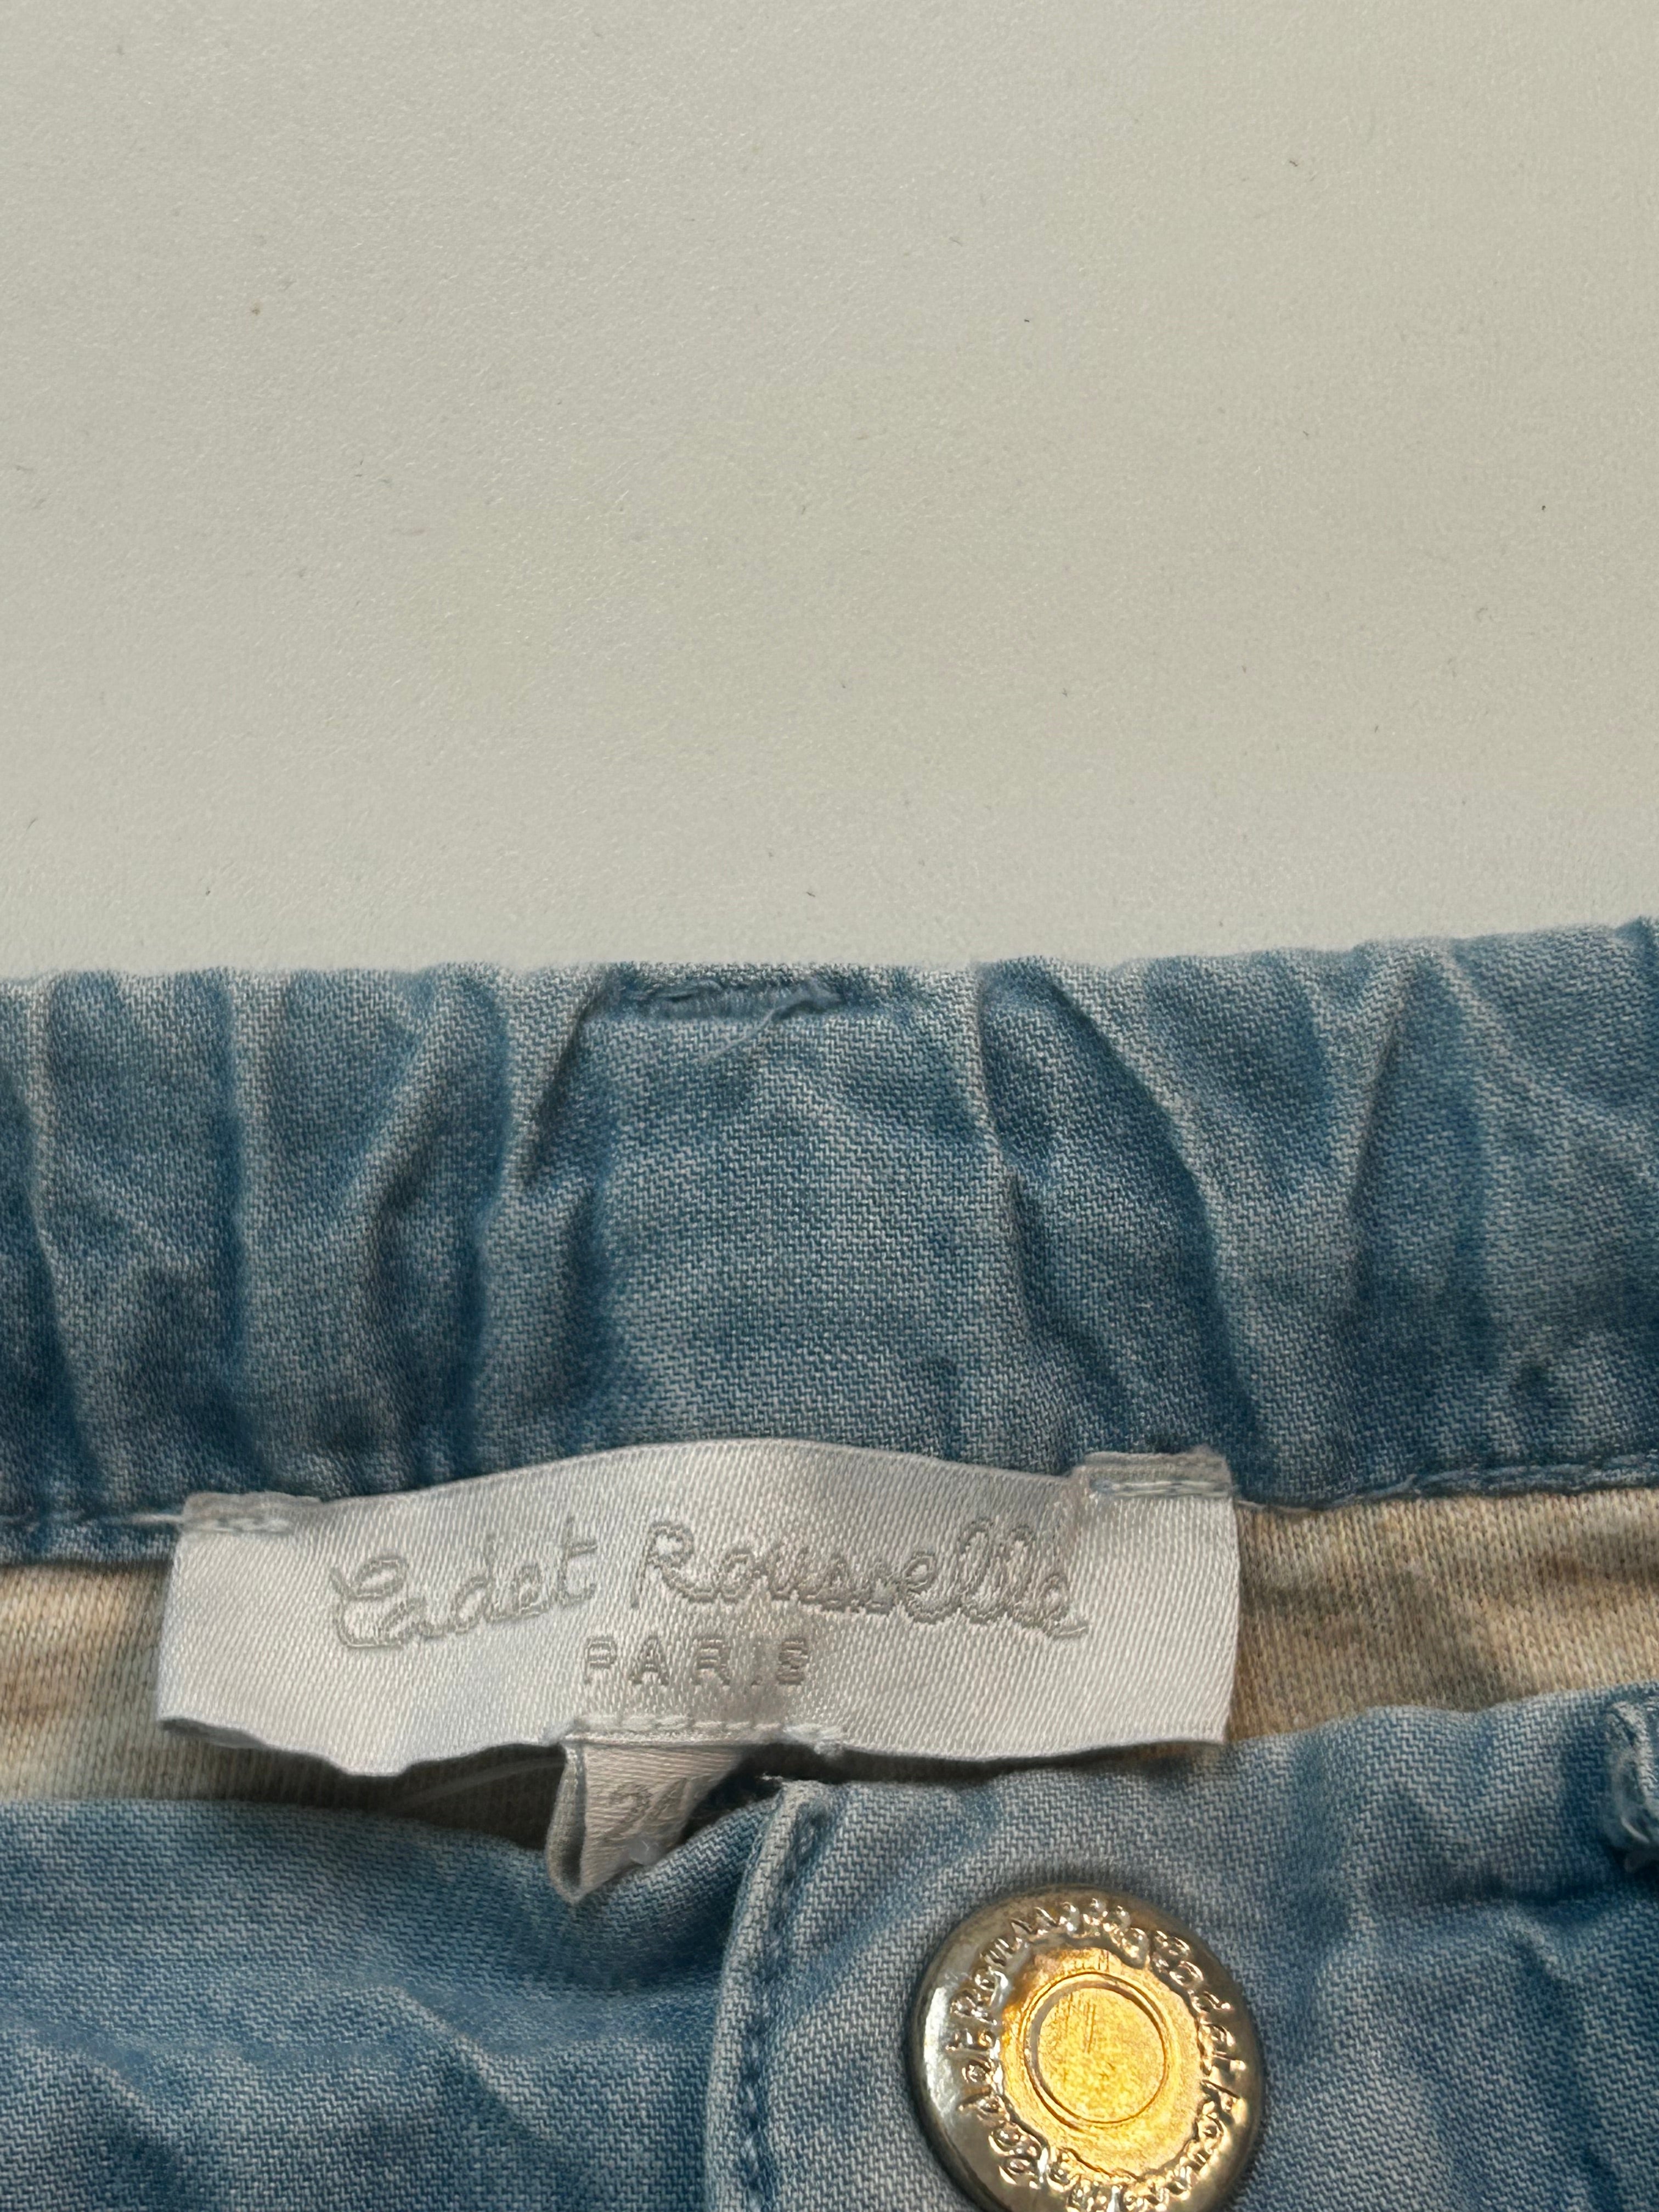 CADET ROUSSELLE - Jean avec doublure douce en coton - 2 ans